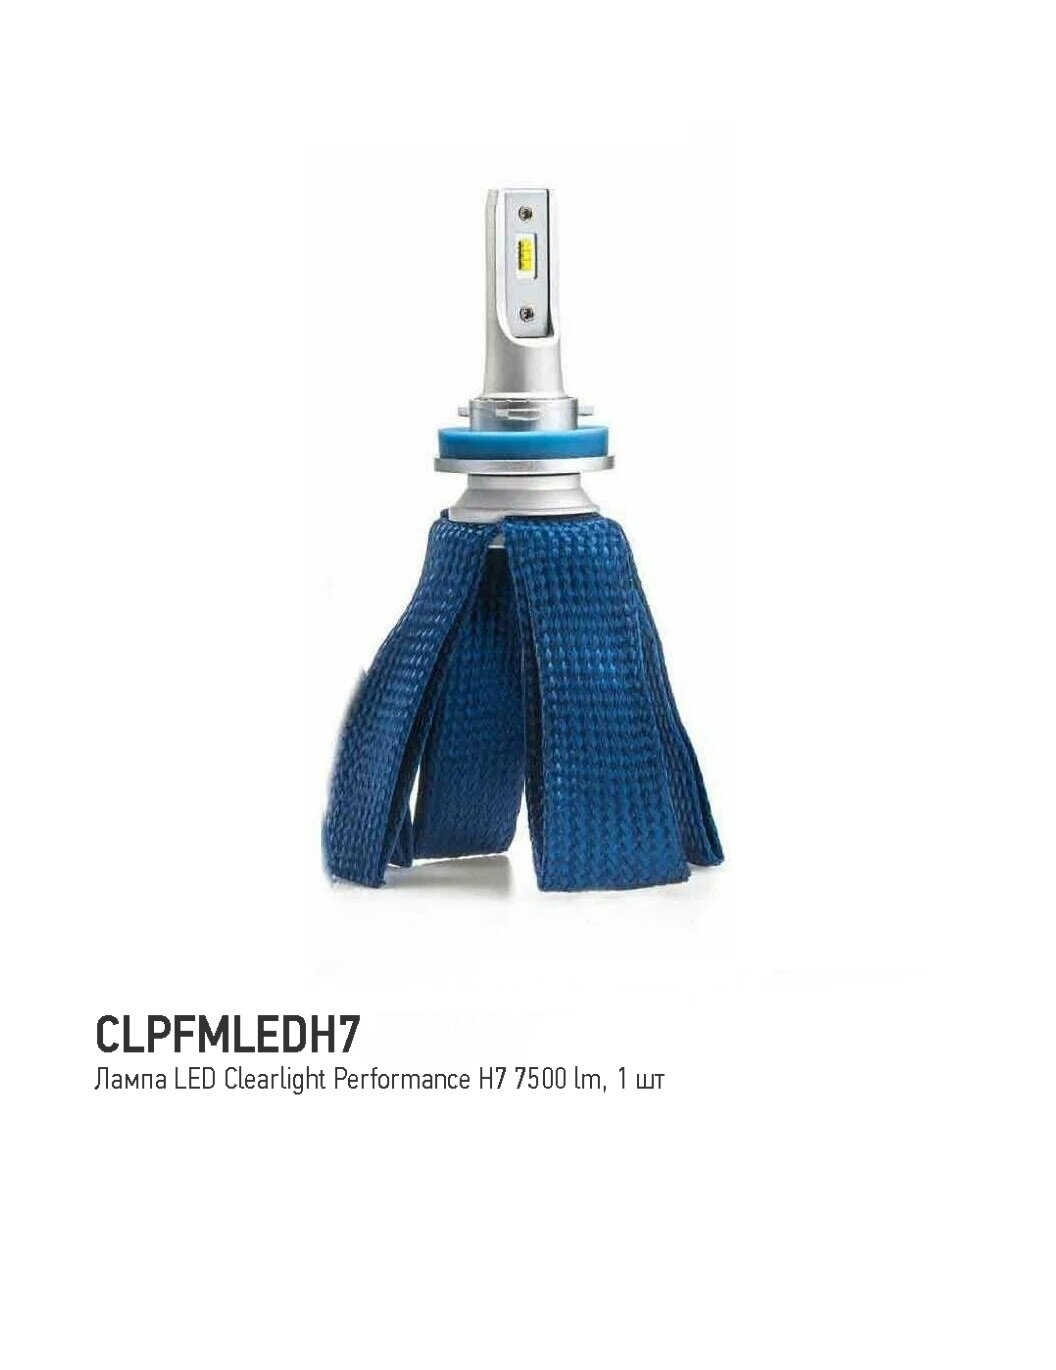 Лампа LED Clearlight Performance H7 7500 lm (1 шт) 6000K, CLPFMLEDH7 - фото №11